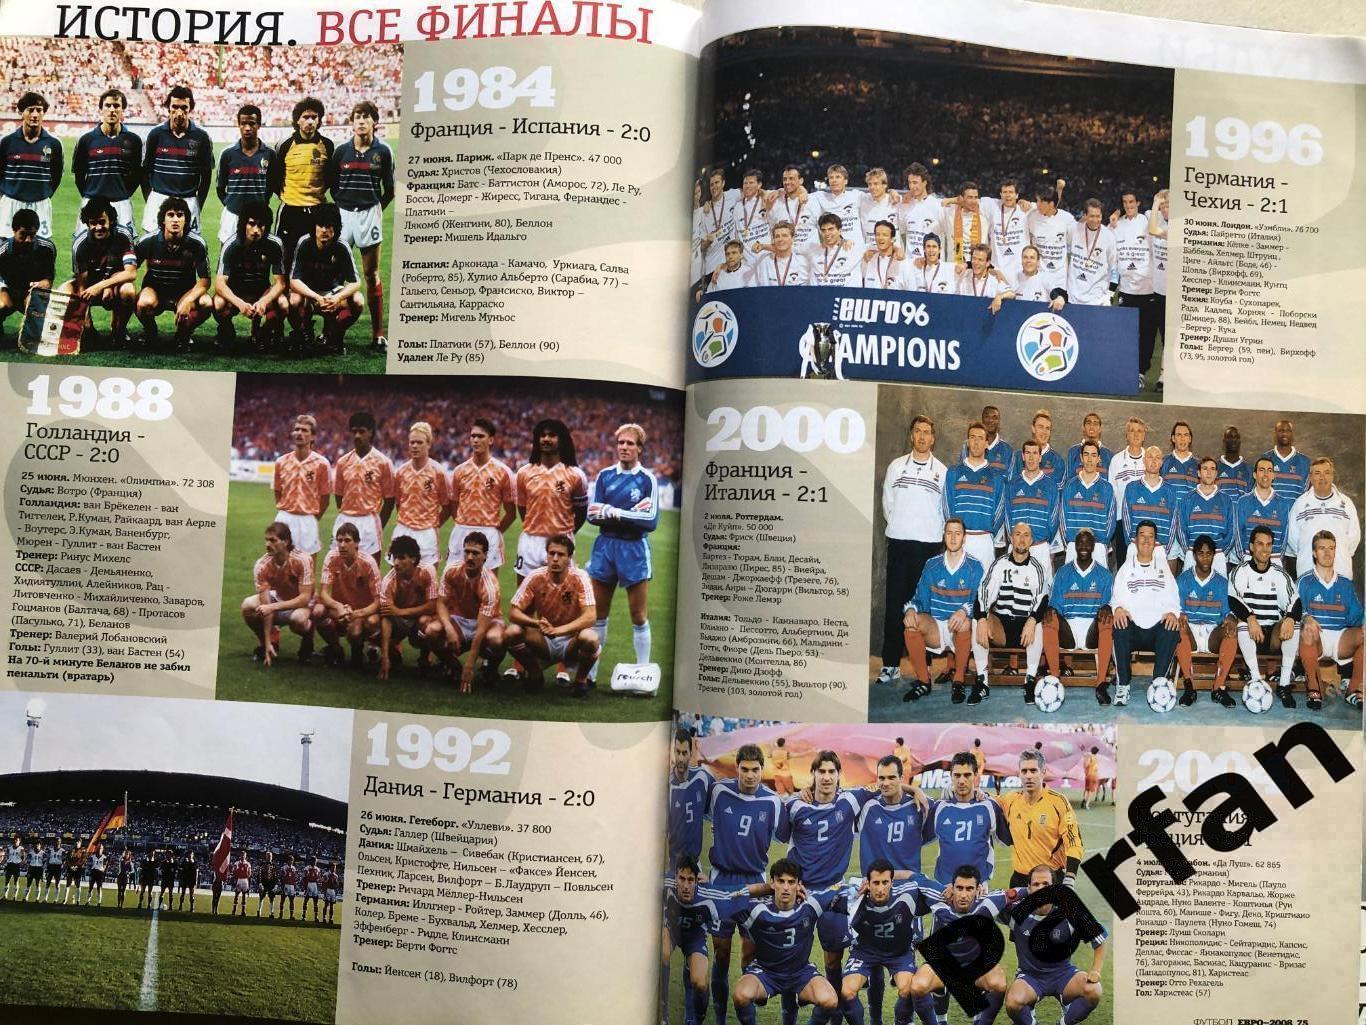 Журнал Футбол Україна Чемпіонат Європи 2008 Спецвипуск 6